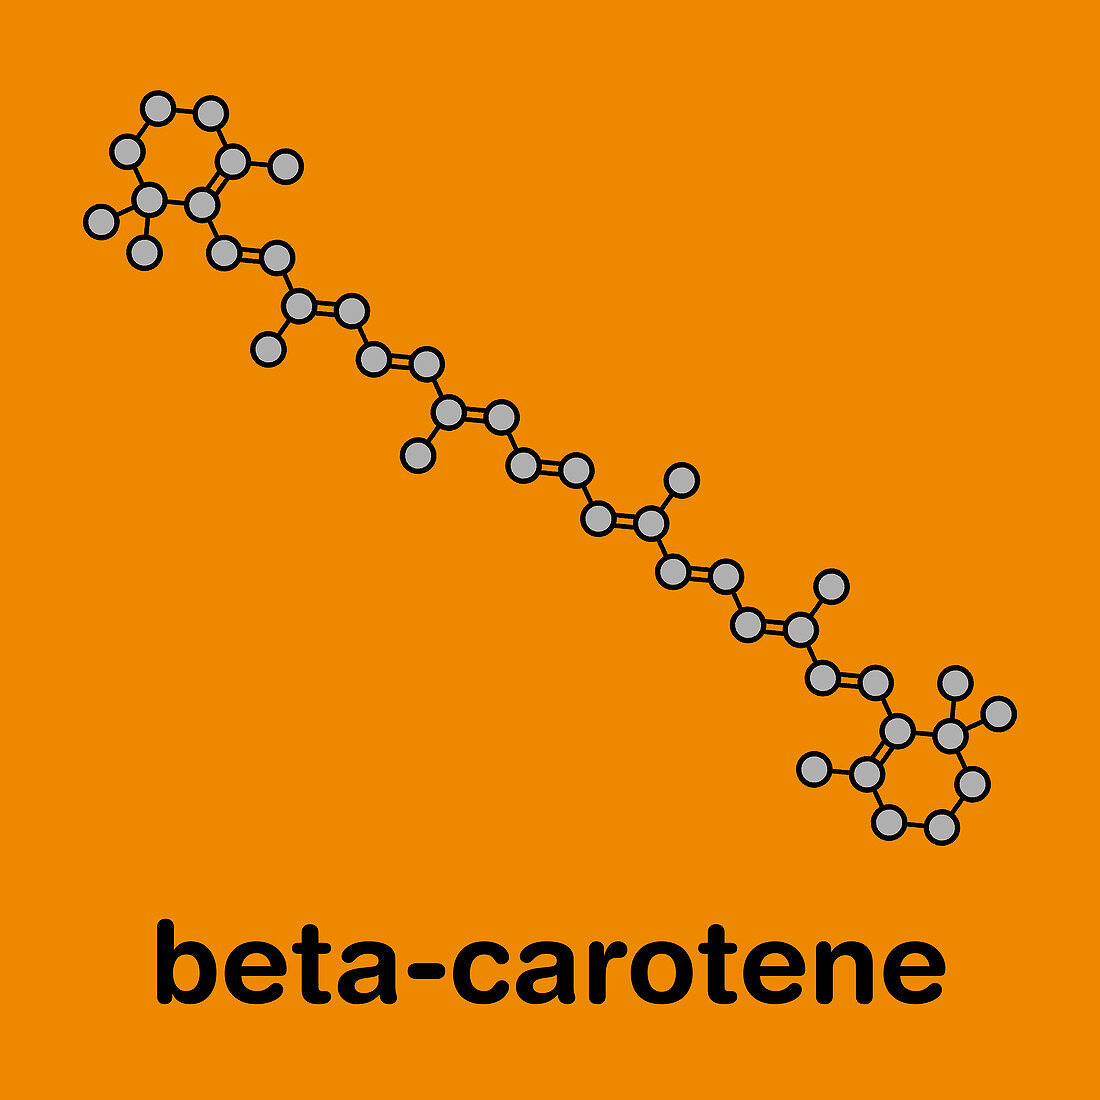 Beta-carotene pigment molecule, illustration